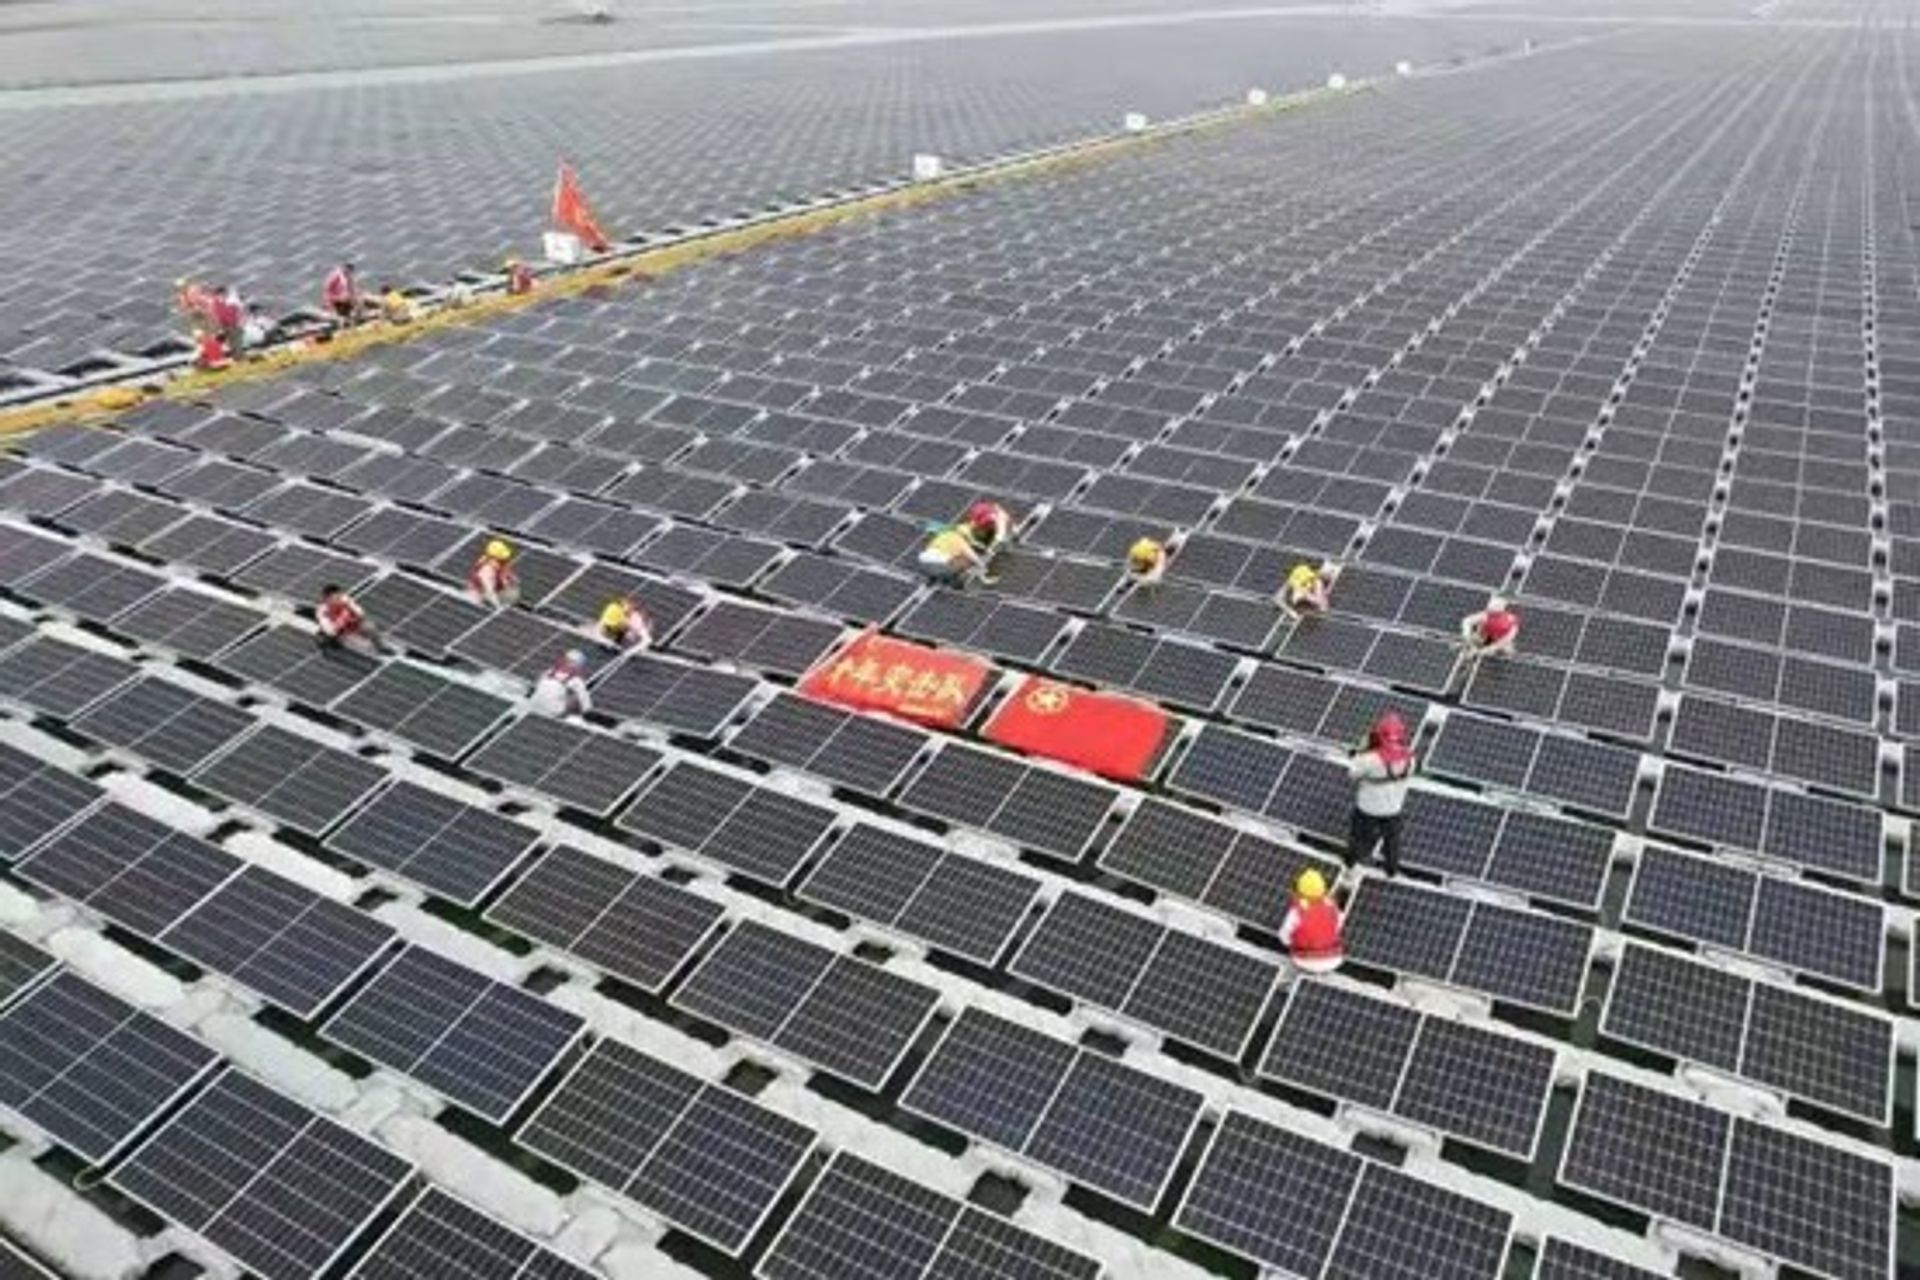 L’impianto solare galleggiante appartenente alla Huaneng Power International e realizzato a Dezhou, nella provincia cinese dello Shandong